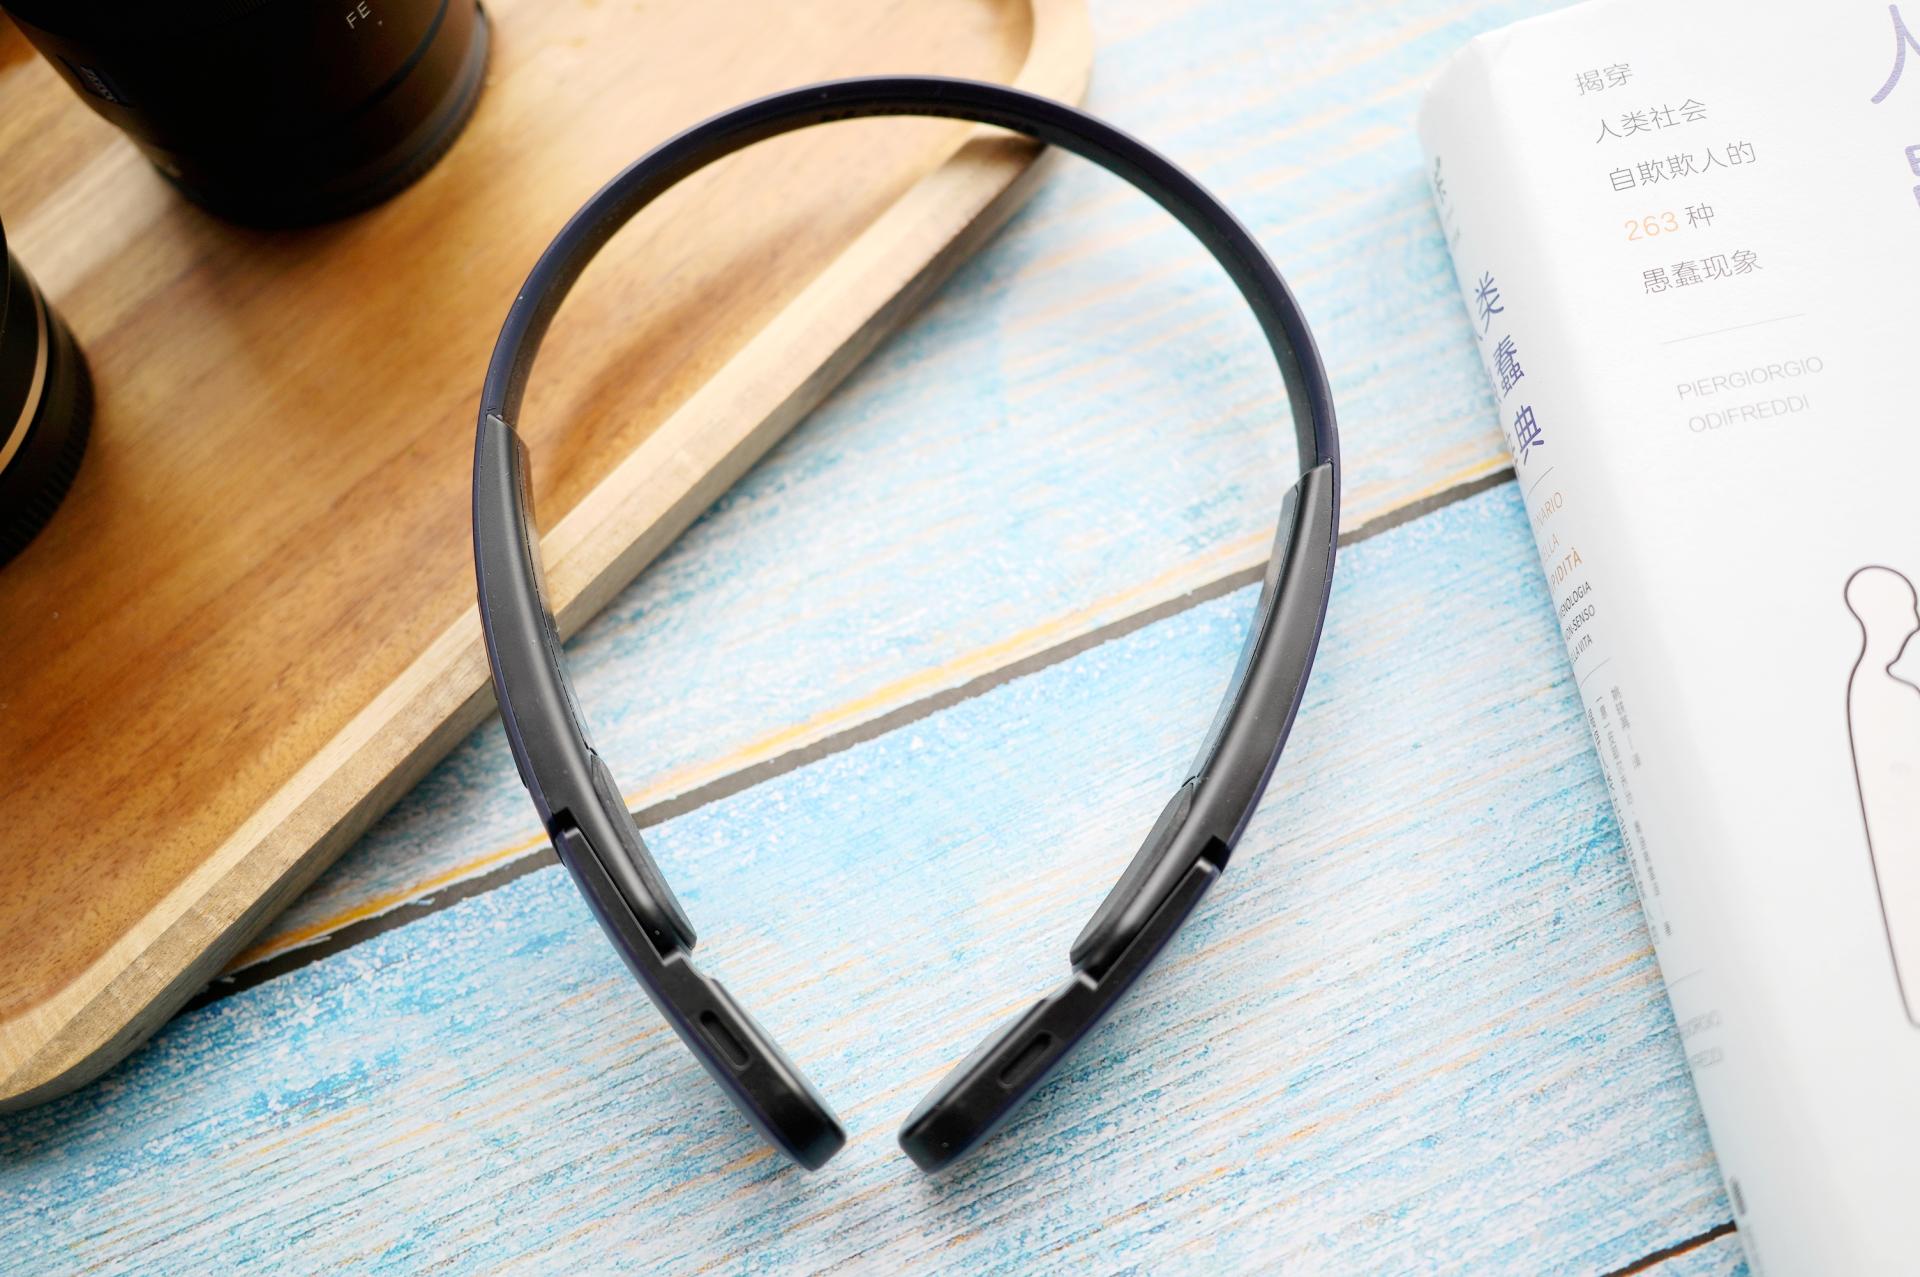 Mu6 Ring运动蓝牙耳机初体验，戴它跑步更安全